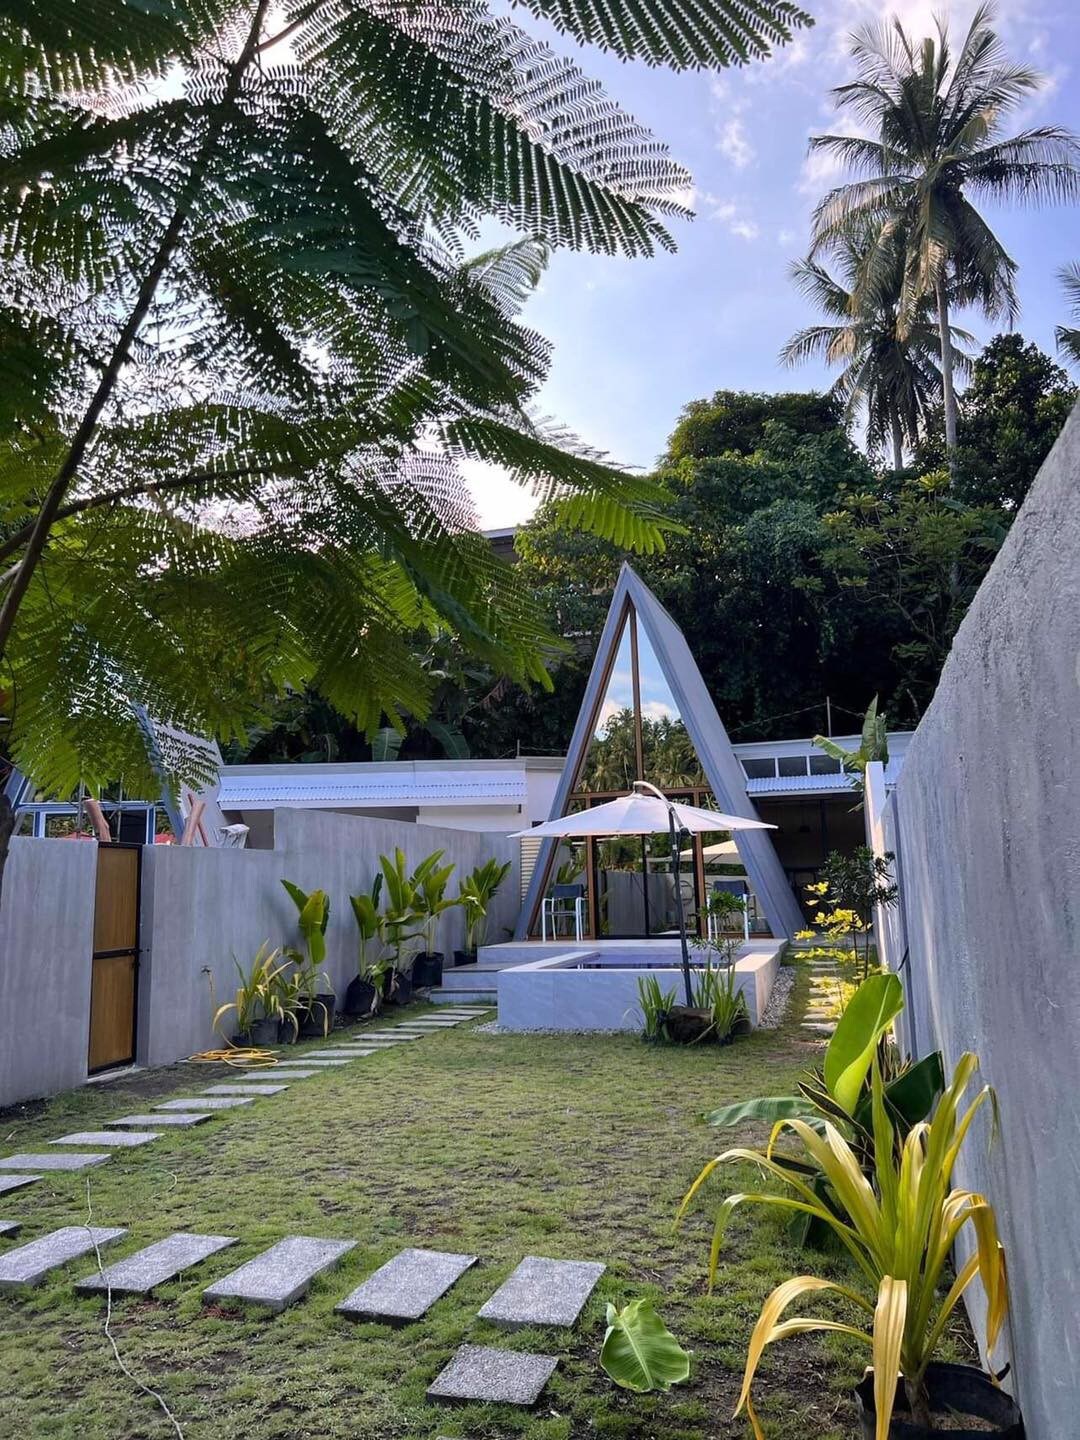 Kefi Cabin: A Slice of Paradise in Villa Jovita